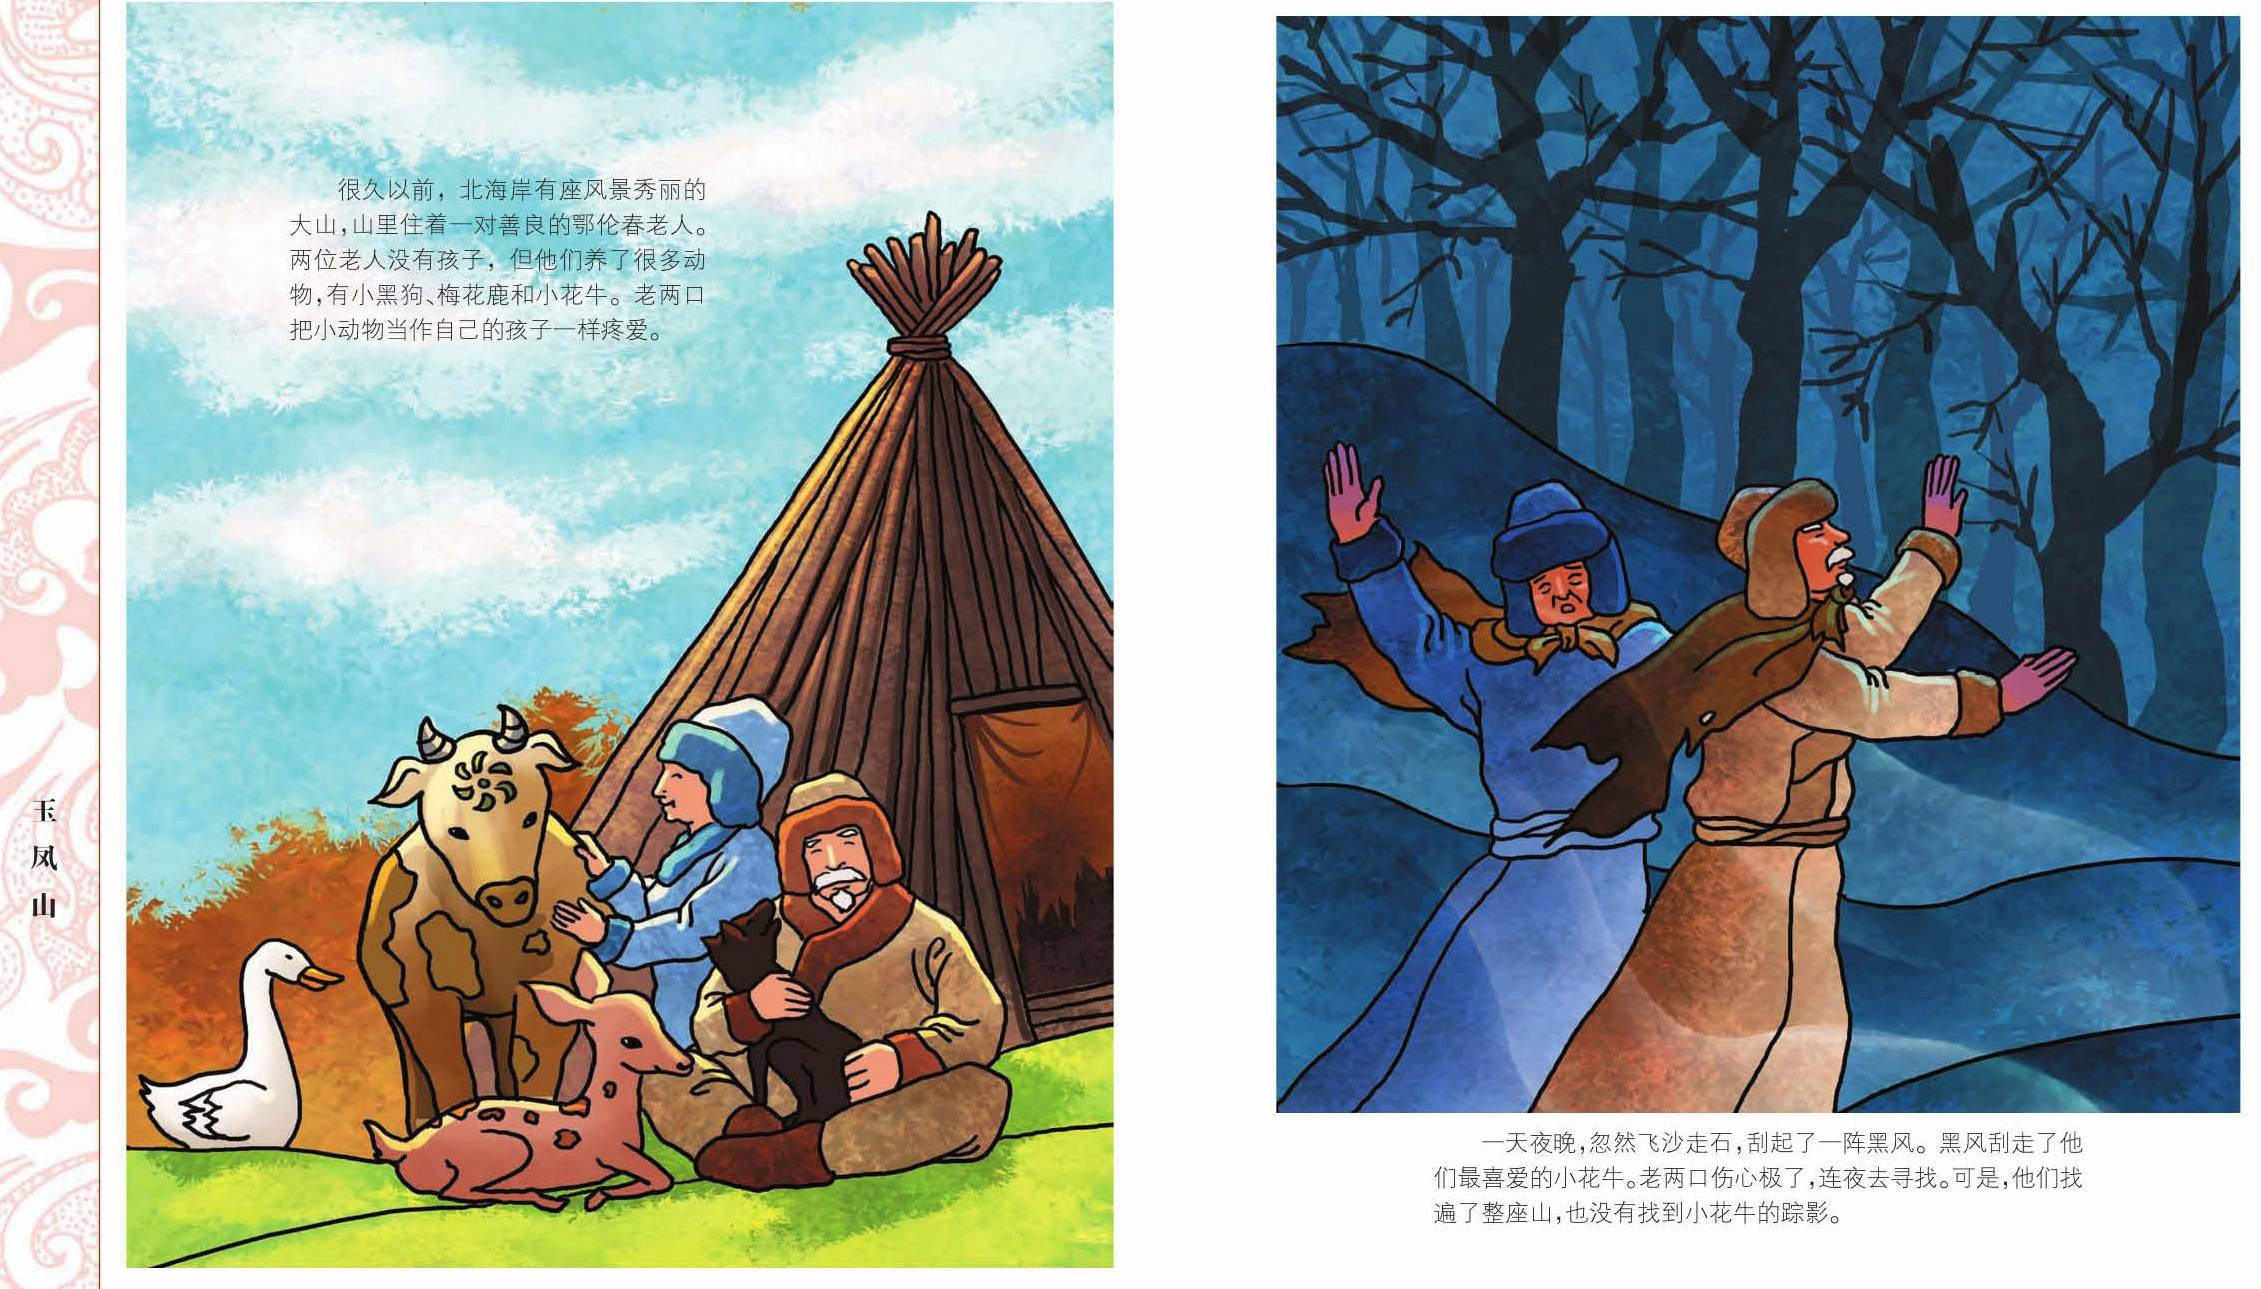 《中国56个民族神话故事典藏—鄂伦春族,鄂温克族,赫哲族卷2》